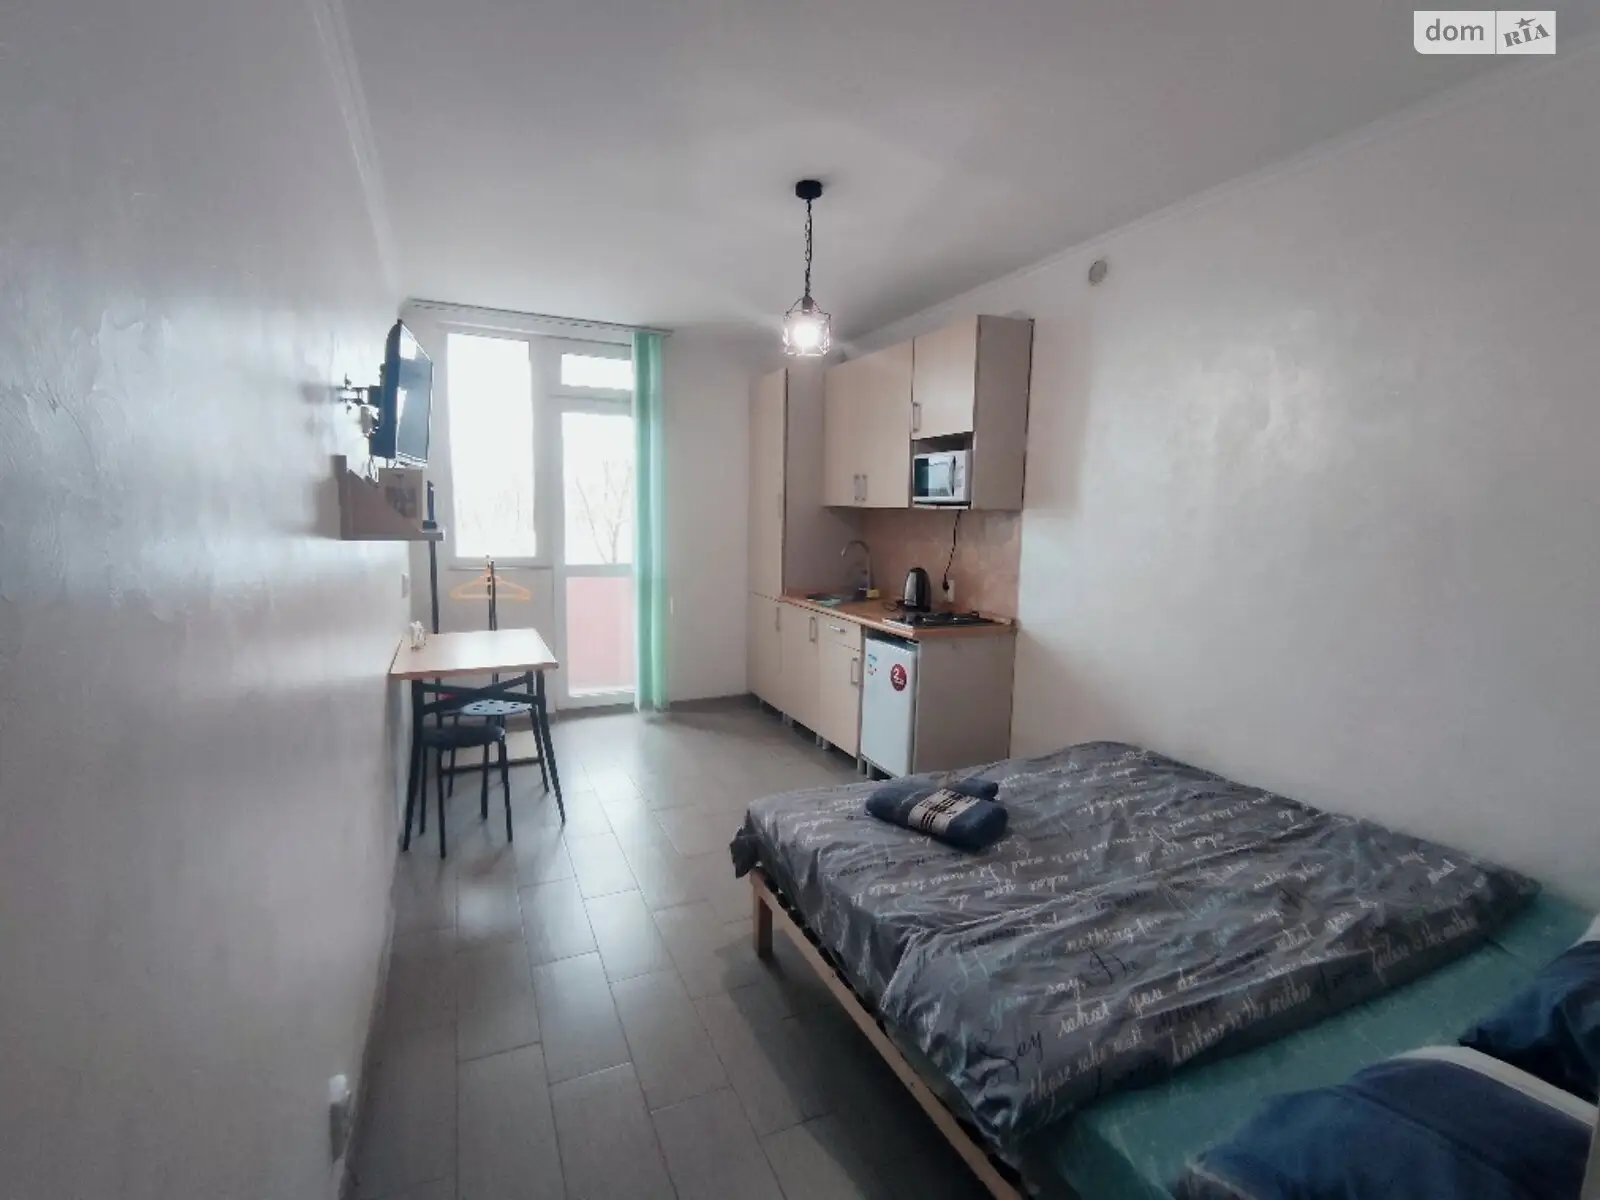 1-кімнатна квартира у Тернополі, цена: 600 грн